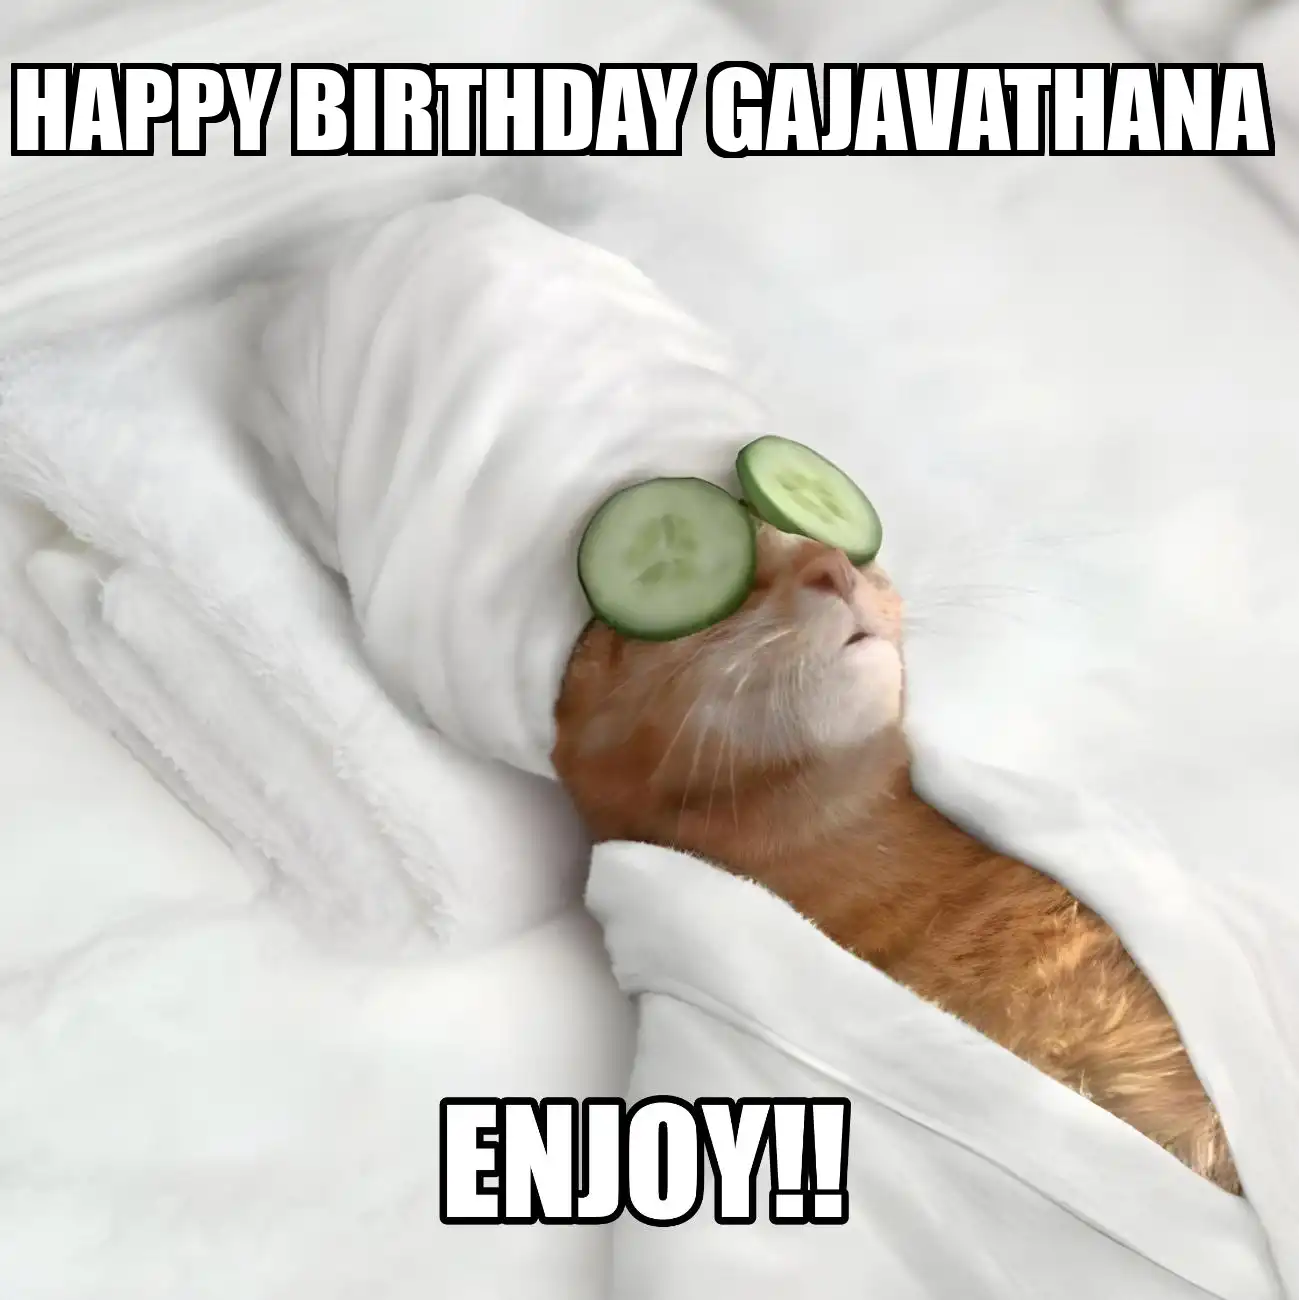 Happy Birthday Gajavathana Enjoy Cat Meme